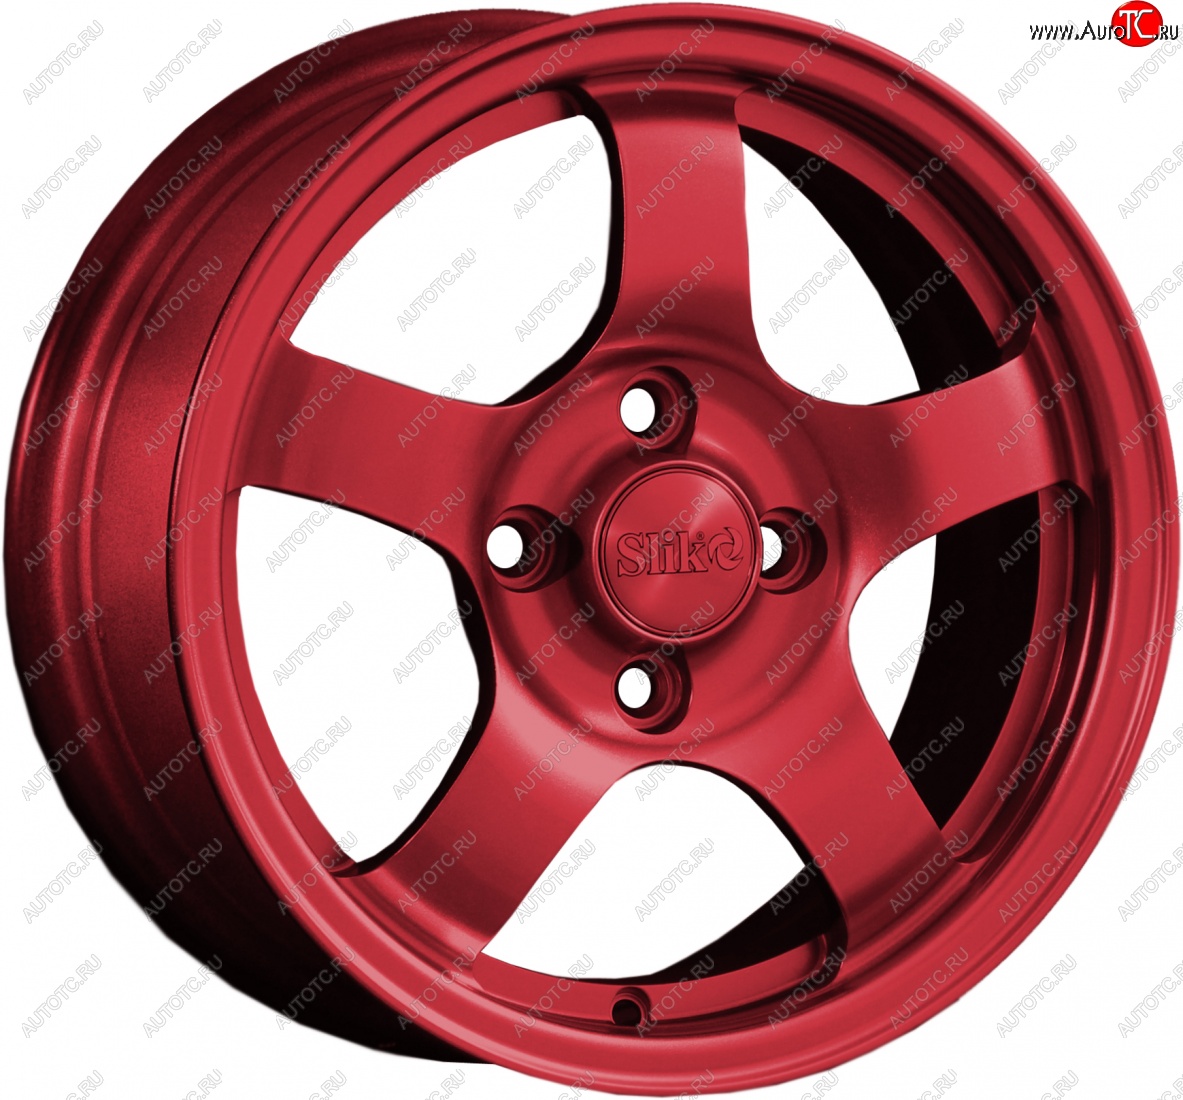 12 799 р. Кованый диск Slik Classik 6x14 (Красный RED) Alfa Romeo 145 930A дорестайлинг (1994-1999) 4x98.0xDIA58.1xET37.0 (Цвет: Красный RED)